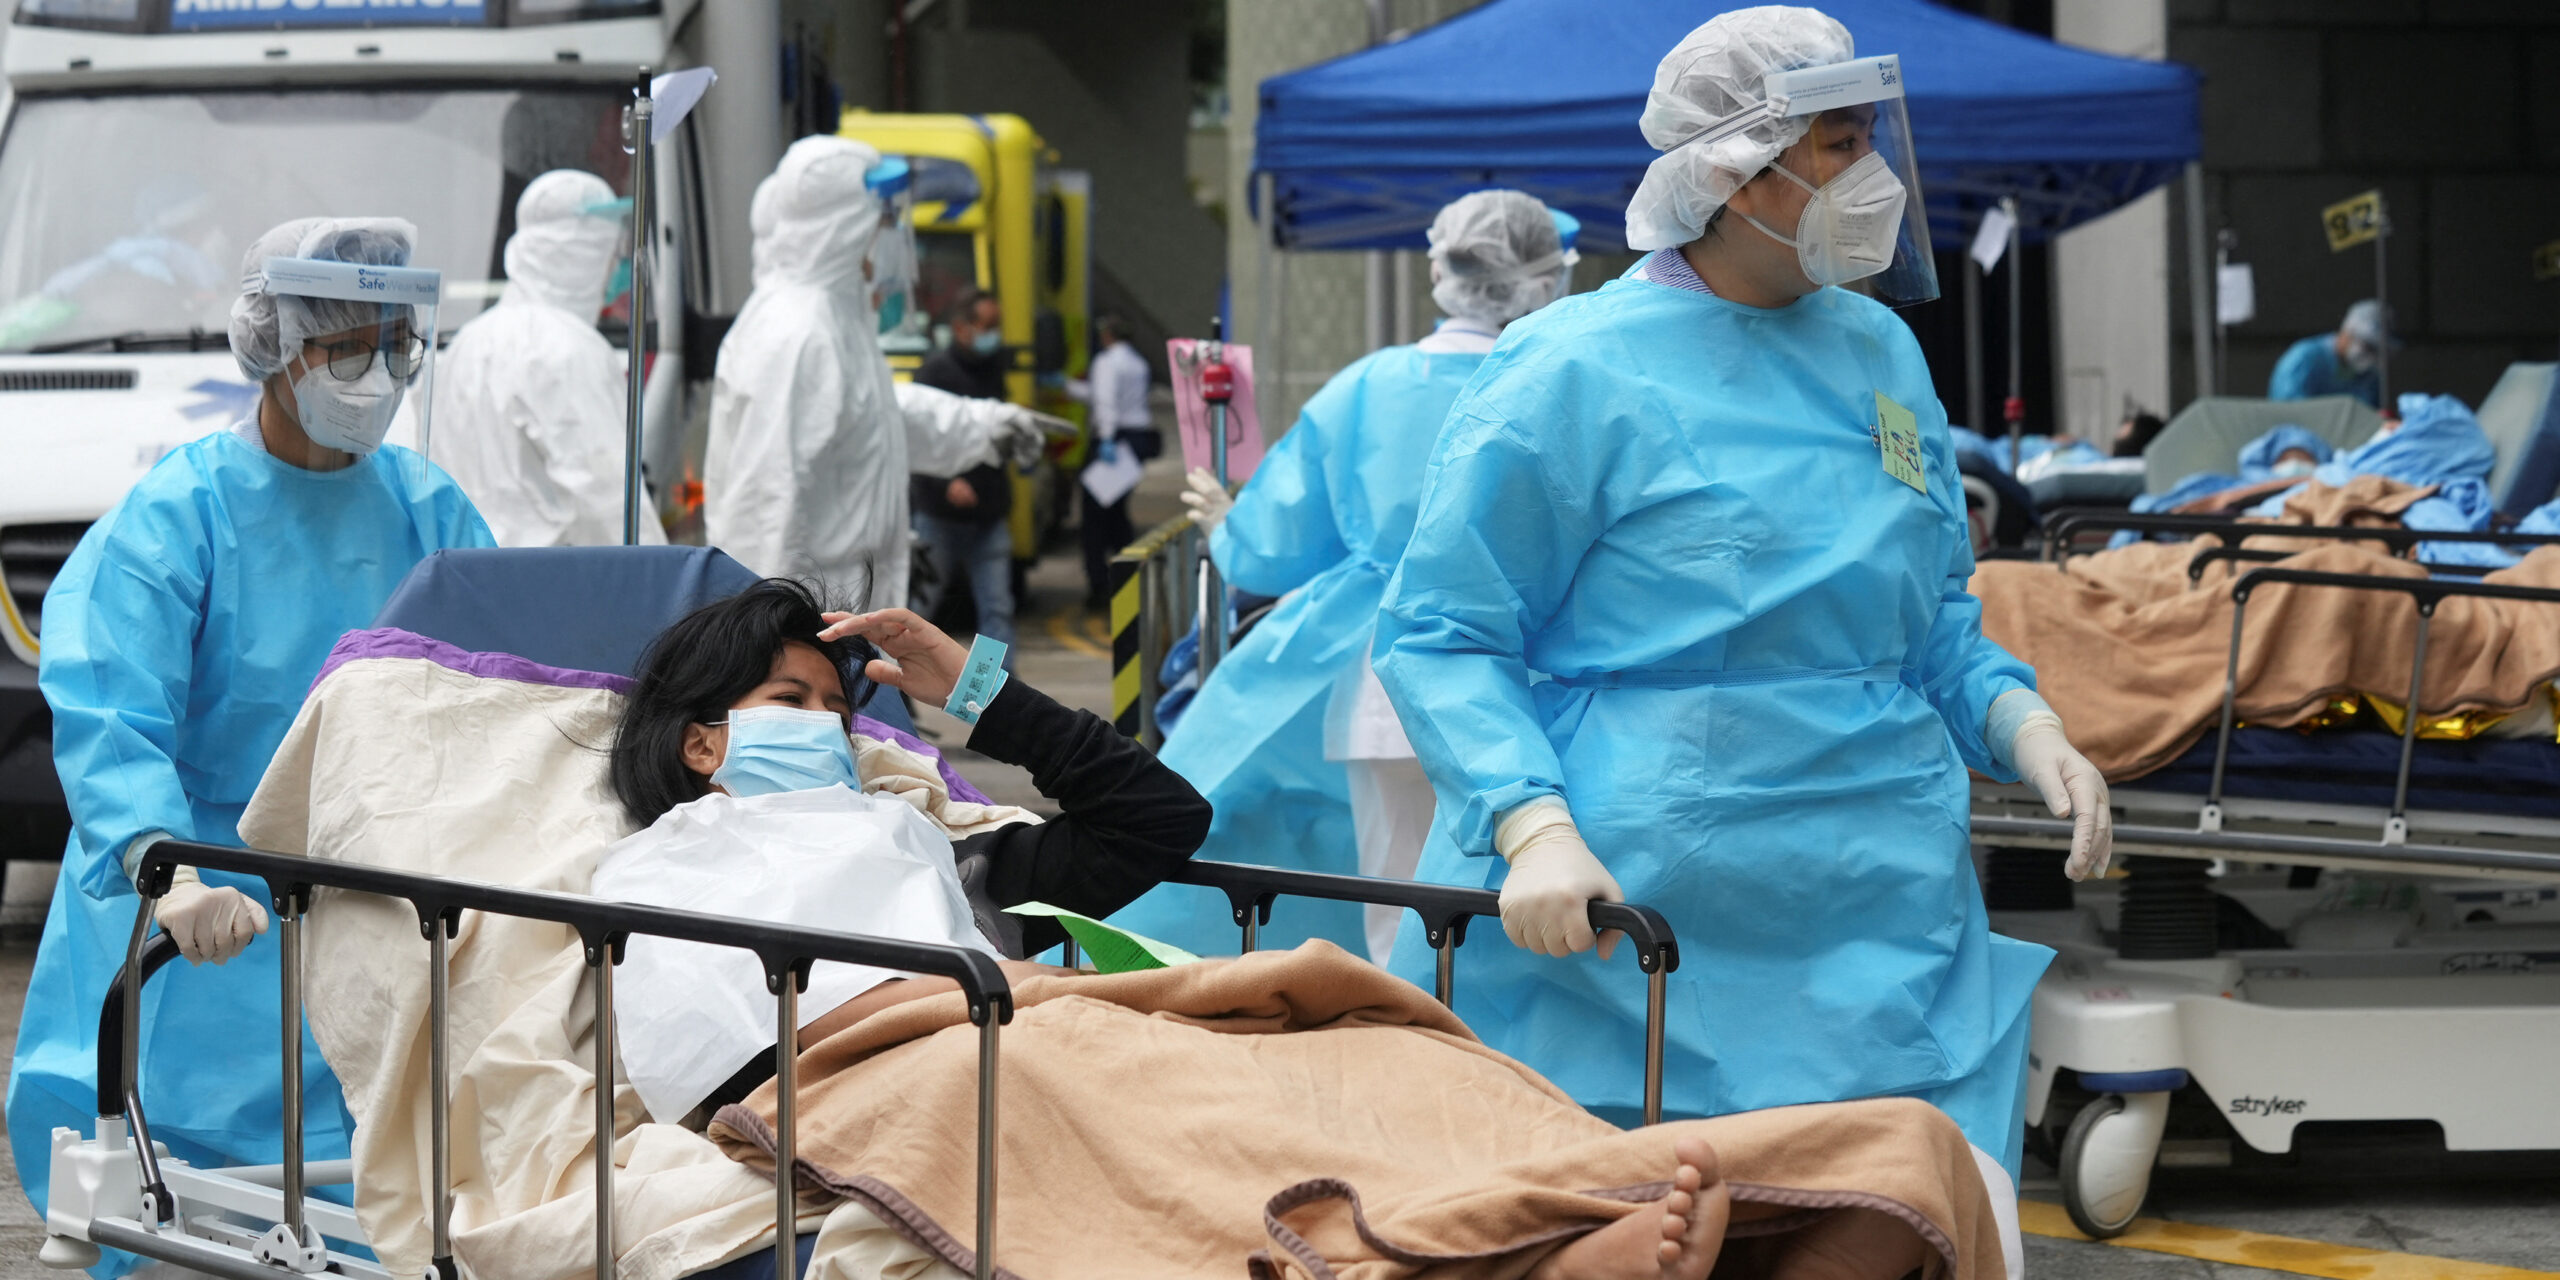 Ésta pandemia dejará tantas secuelas como la polio y la gripe española | El Imparcial de Oaxaca